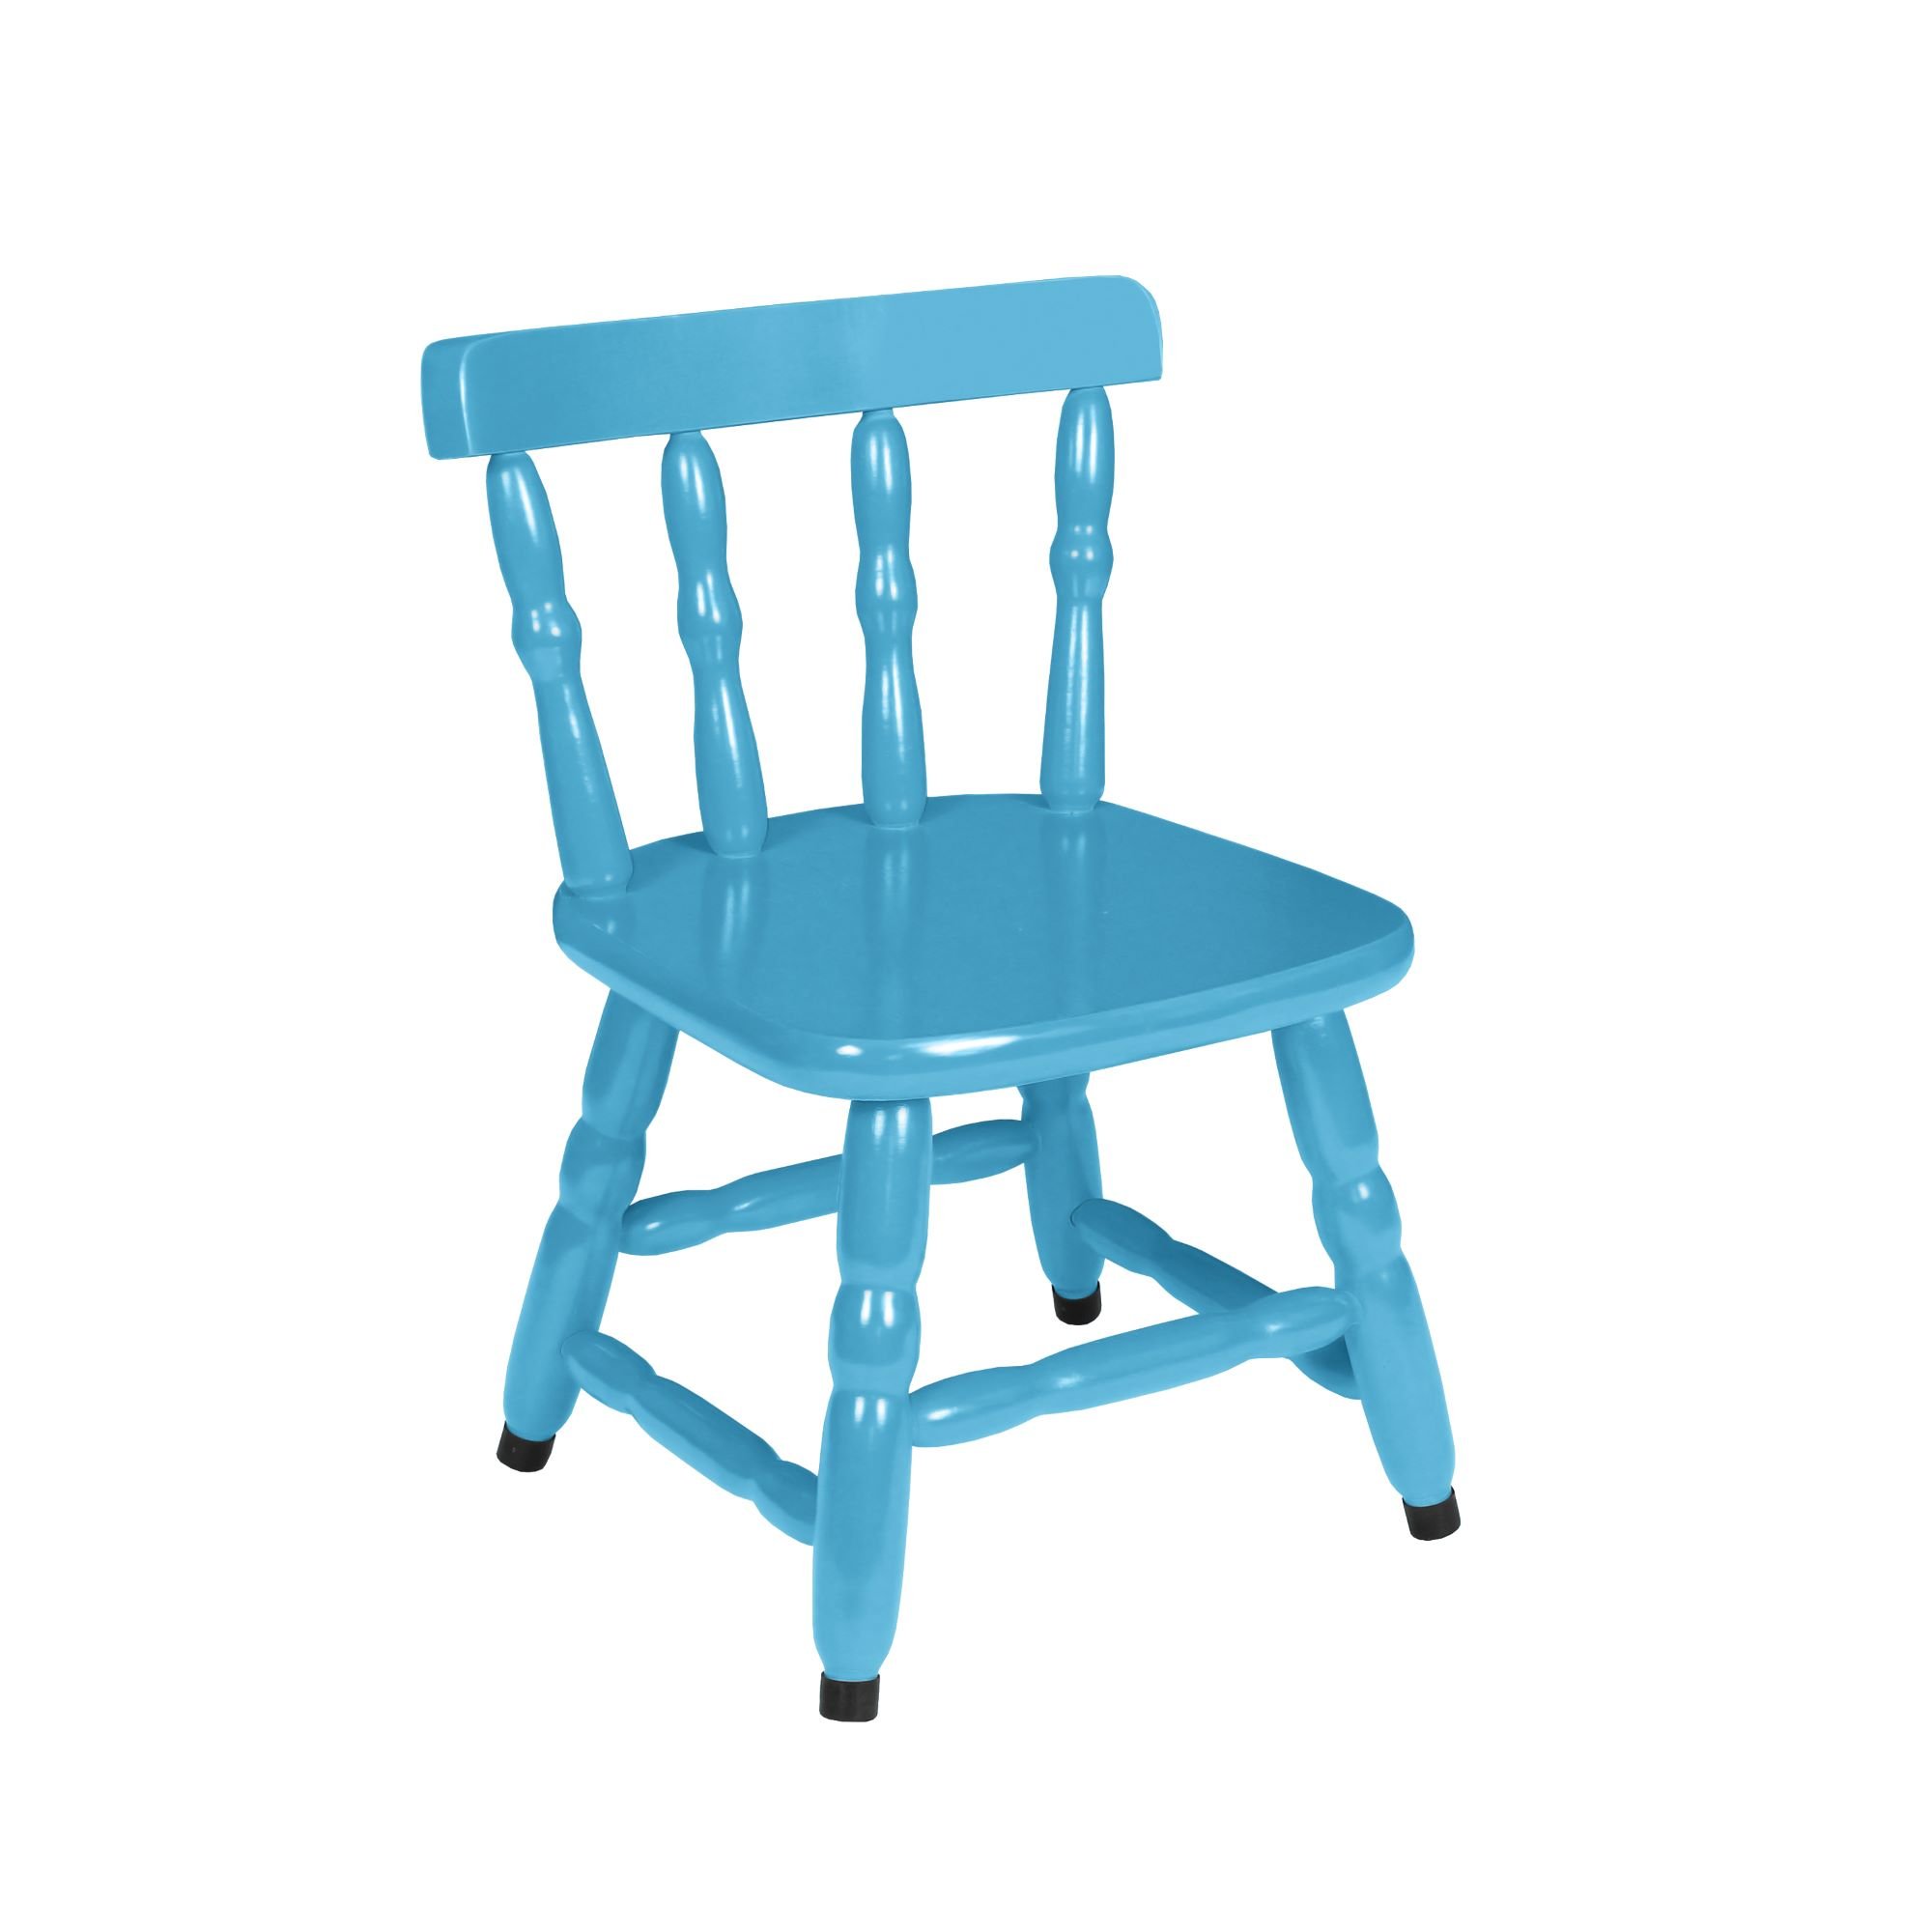 1 Cadeira Infantil Scholl Coloridas - Azul